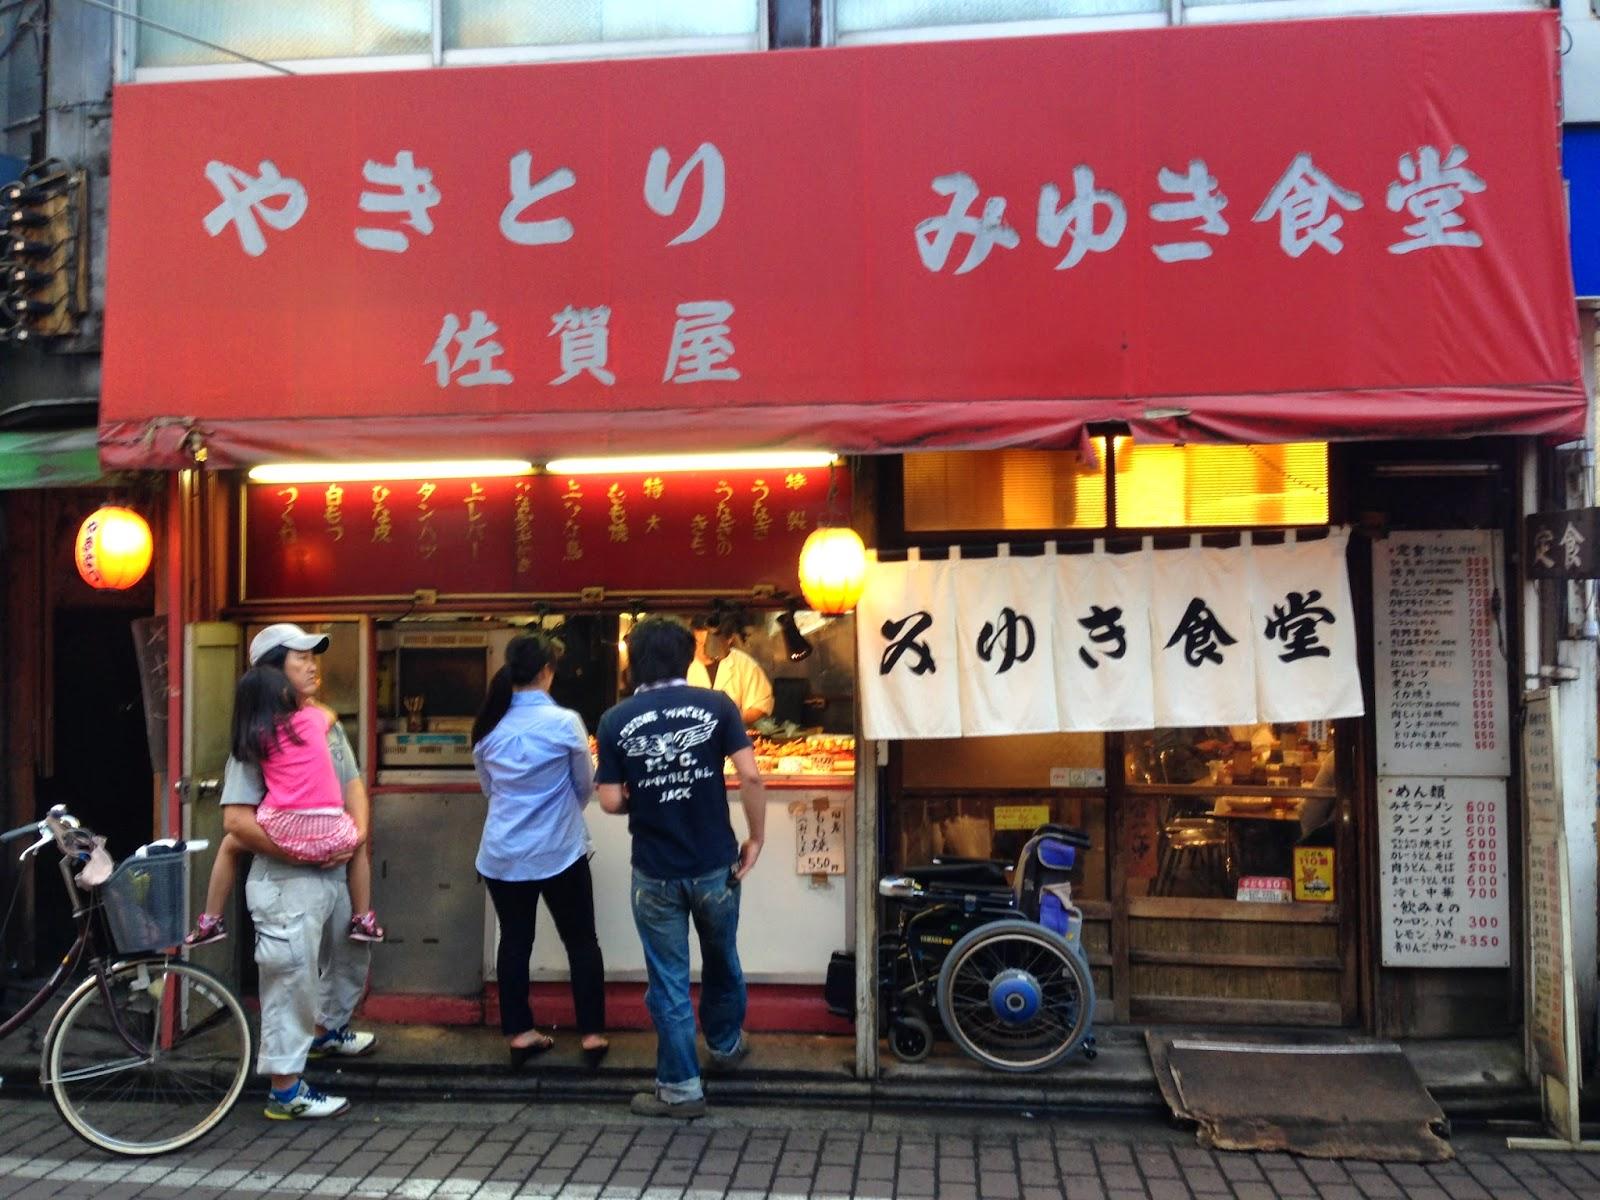 孤独のグルメseason4 第1話 東京都清瀬市のもやしと肉のピリ辛イタメ のお店 みゆき食堂 あげてけ